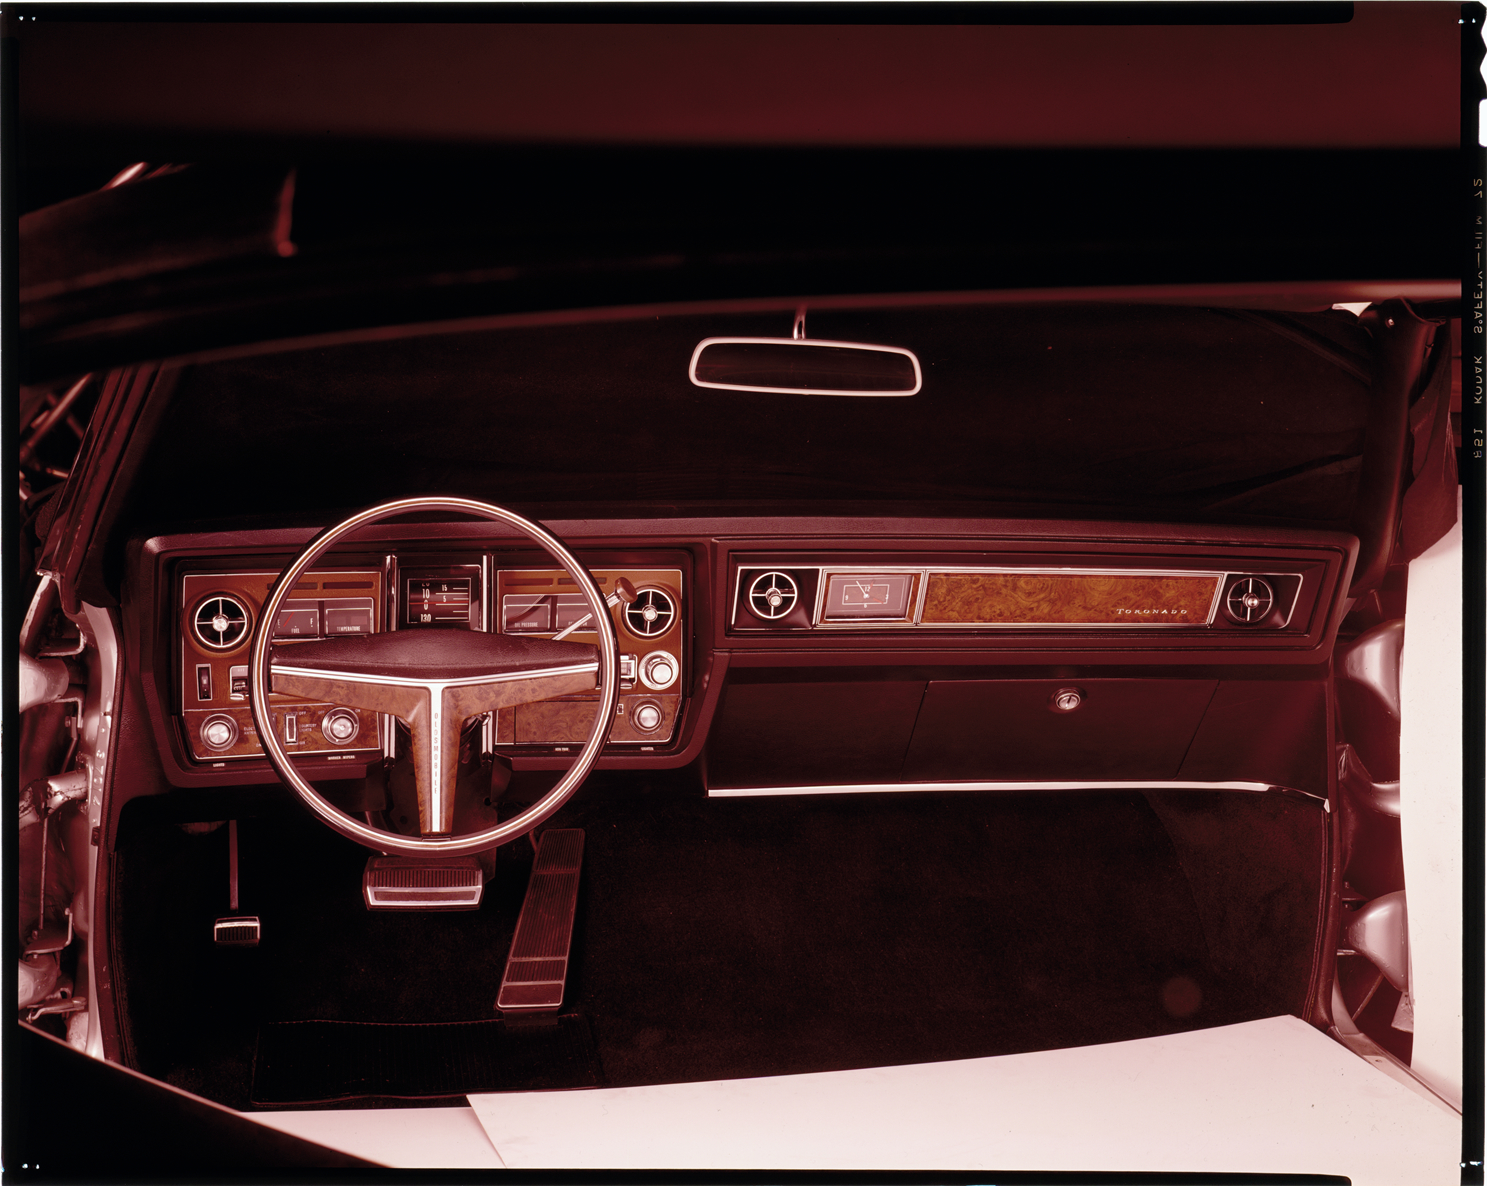 1970 Oldsmobile Toronado Automobile Interior Dpl Dams